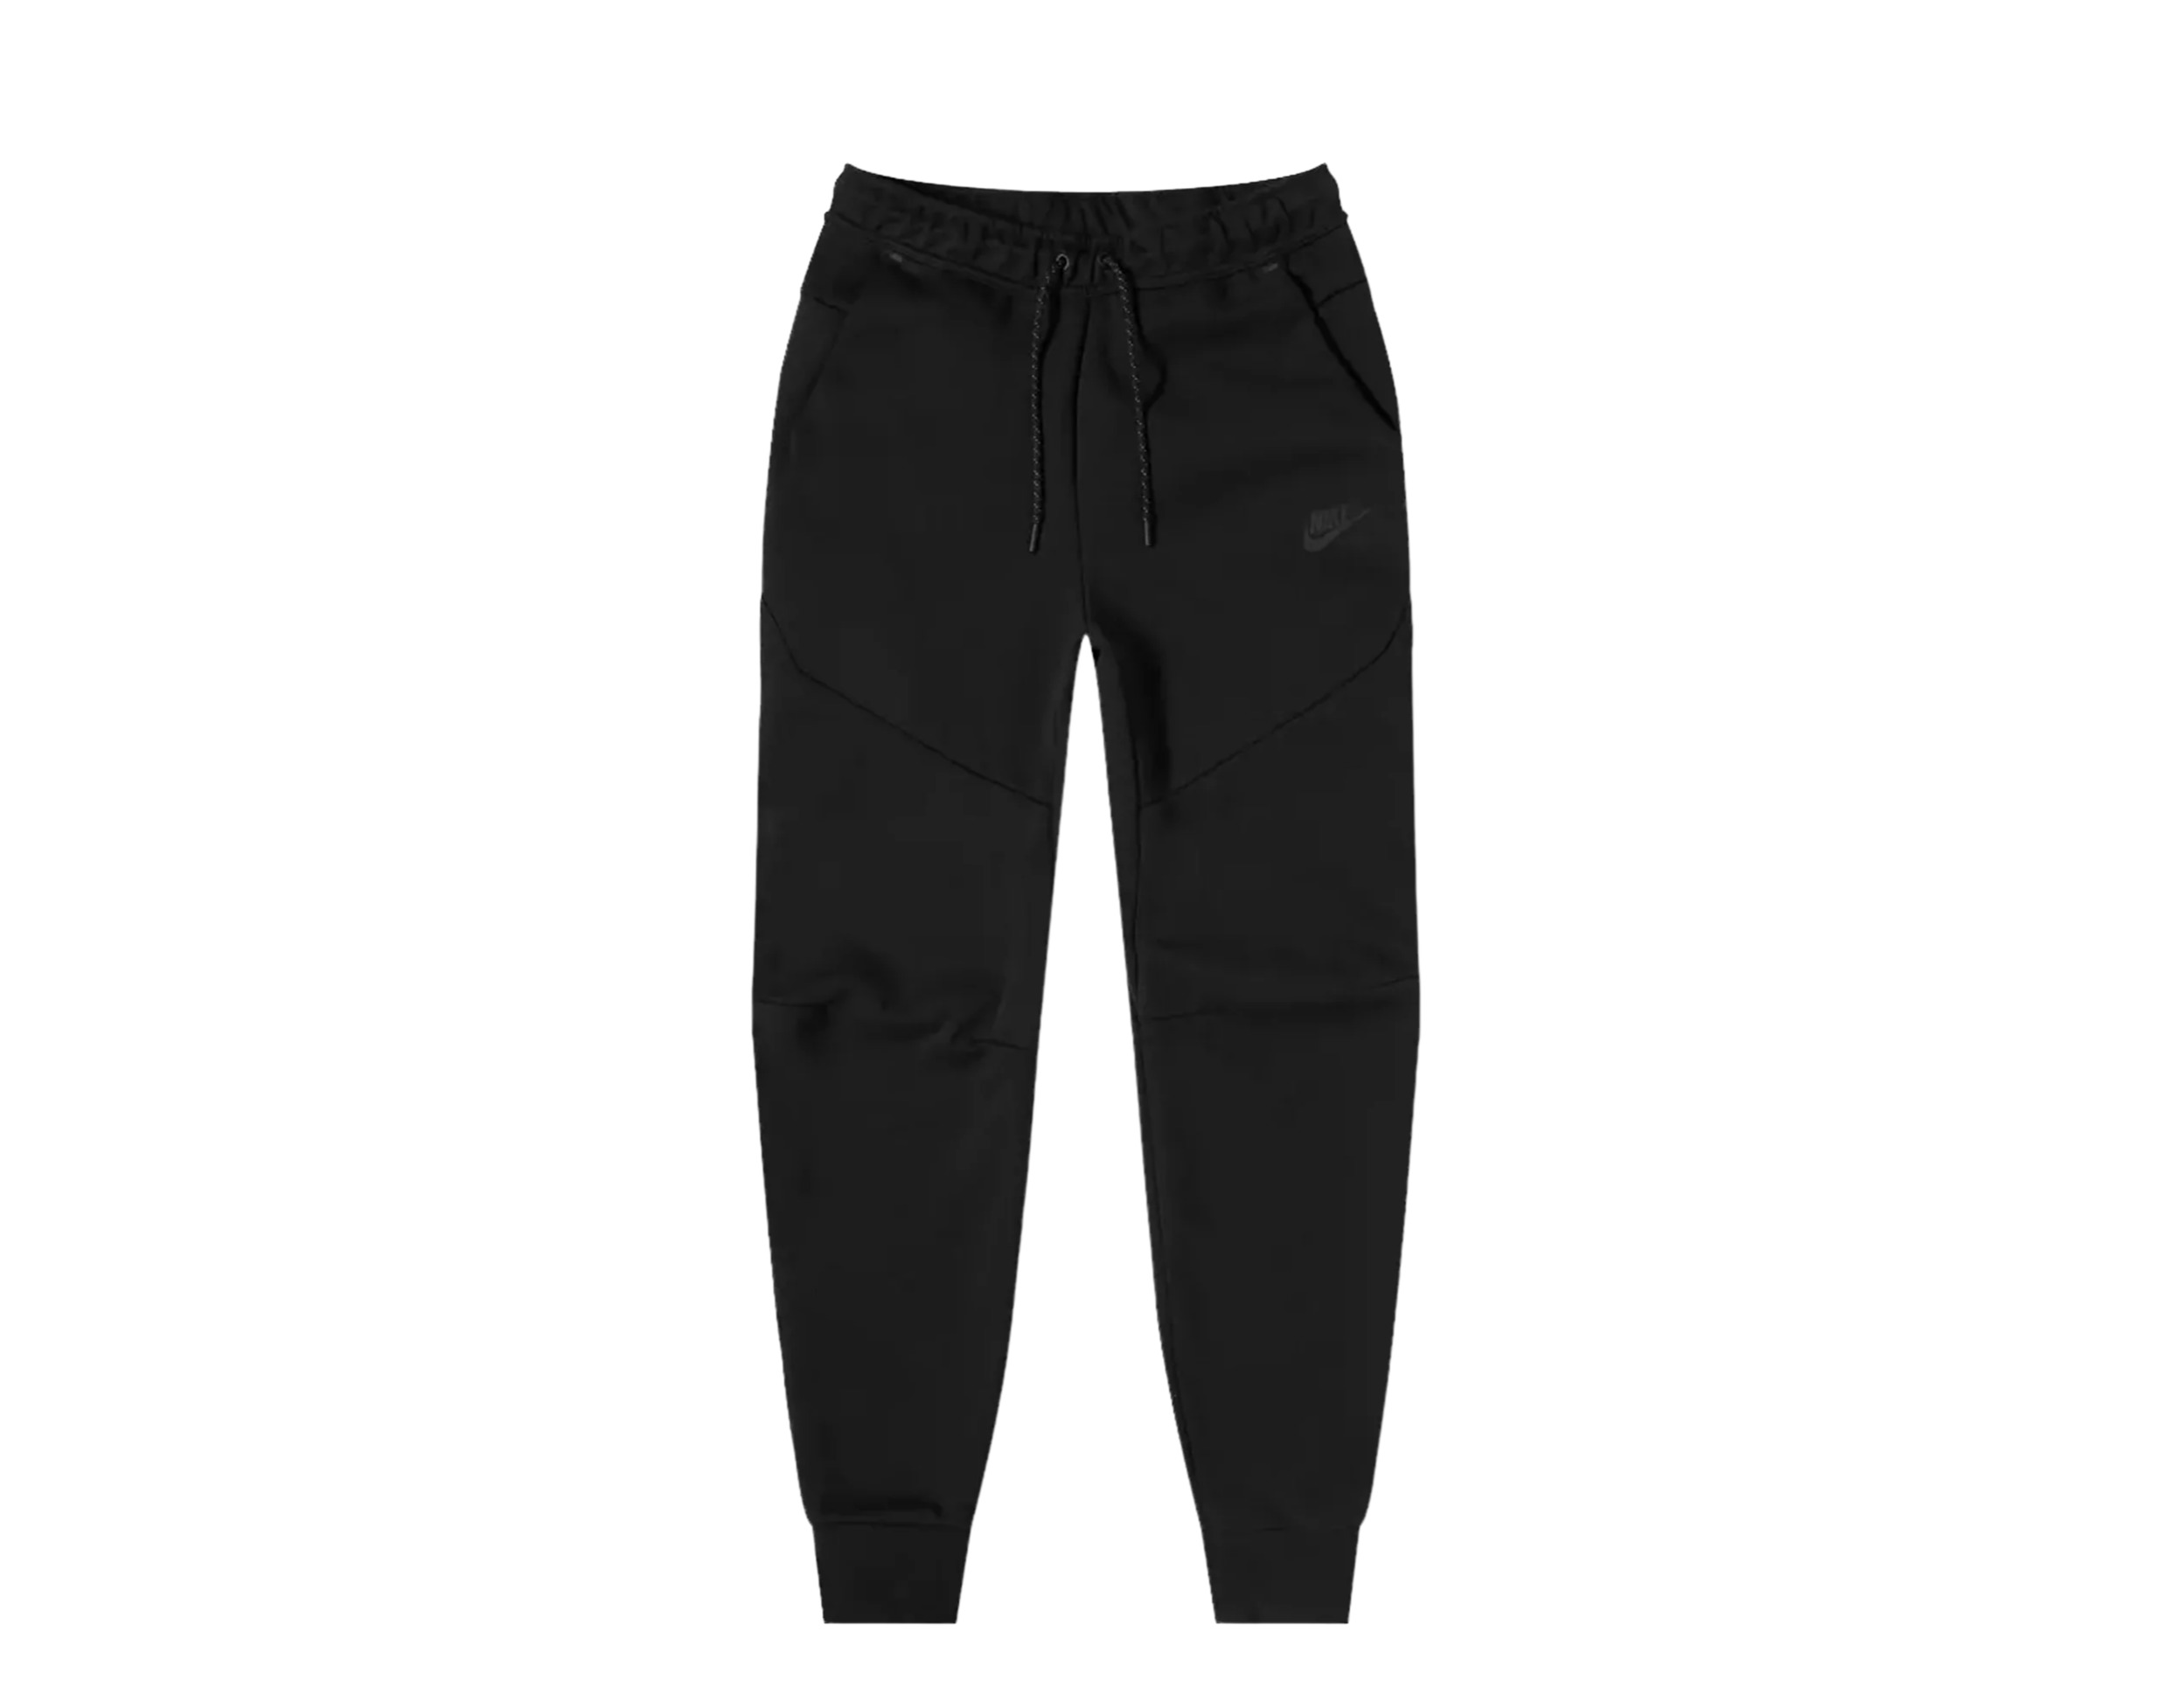 Nike Sportswear Tech Fleece Men's Joggers Pants Size L - image 1 of 2